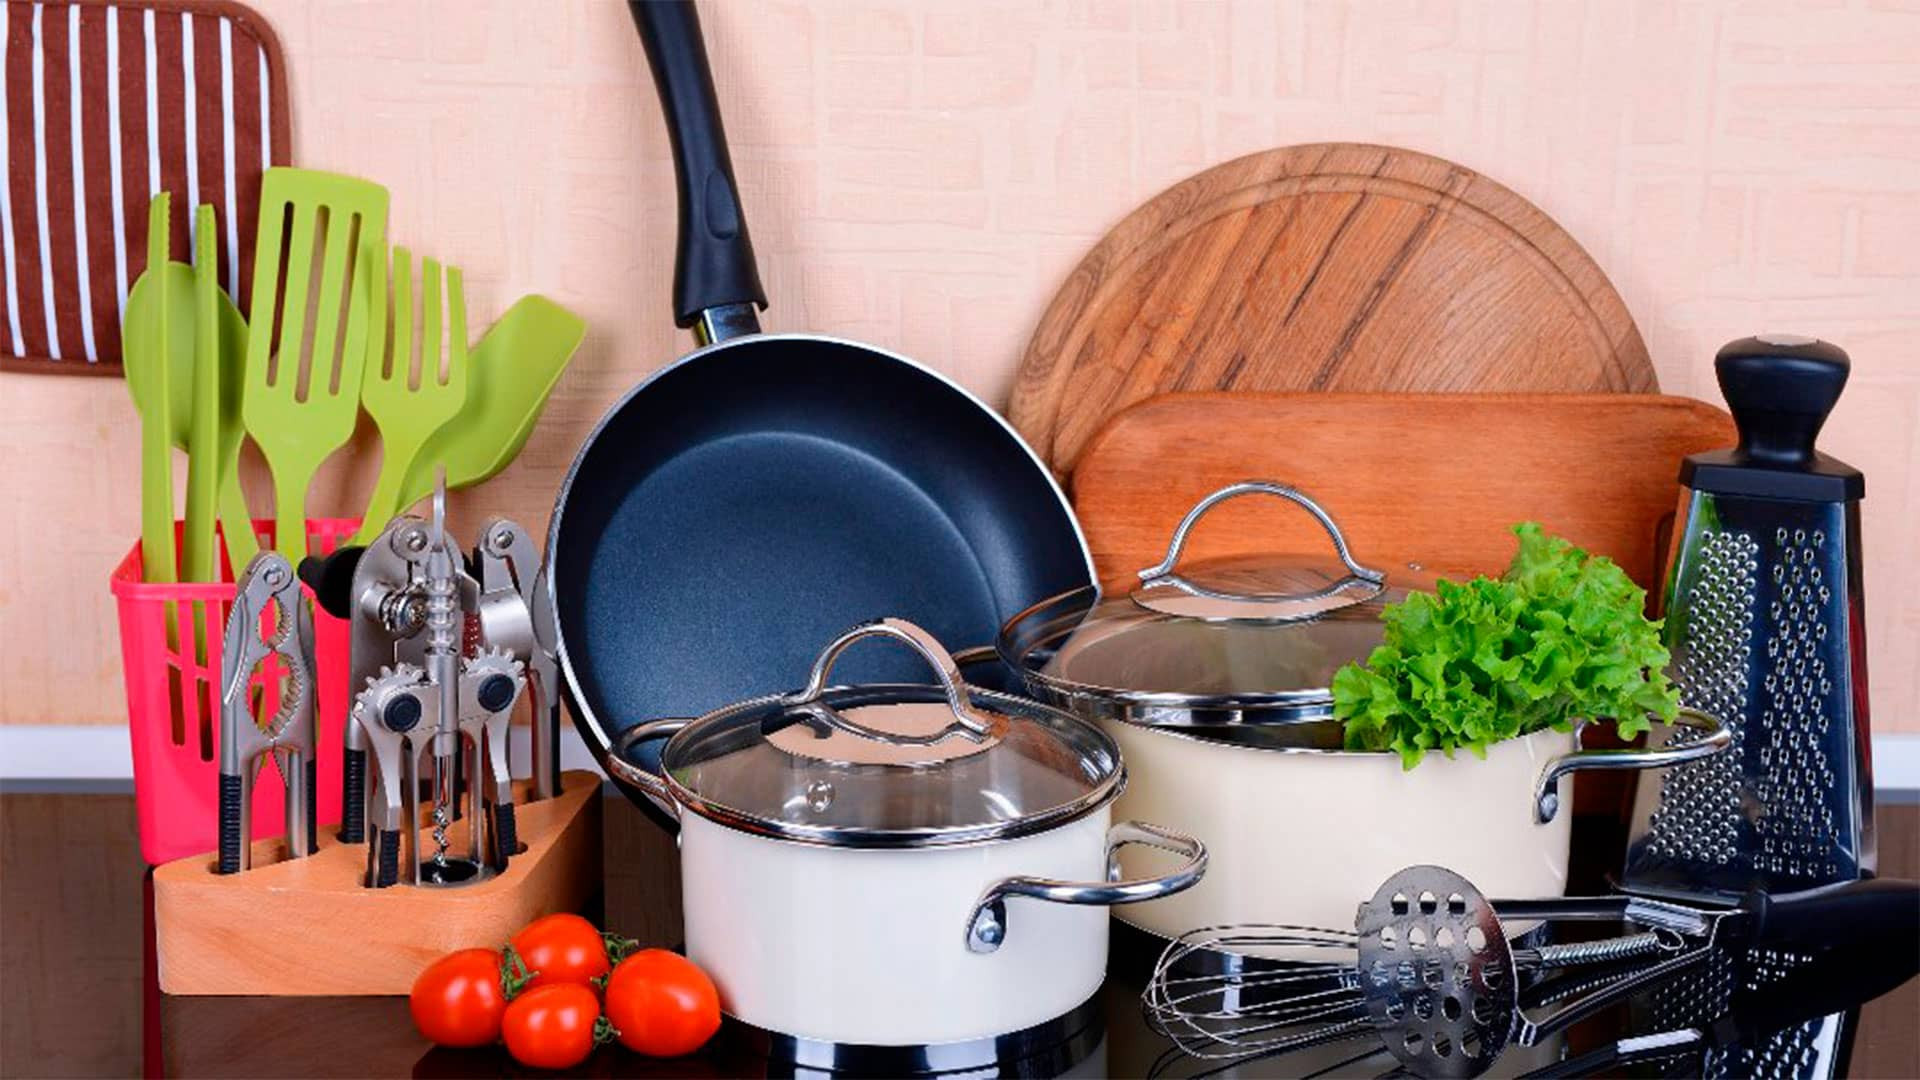 Брать посуду можно. Кухонная утварь. Кухонные принадлежности и аксессуары. Посуда и кухонные принадлежности. Инвентарь для кухни.